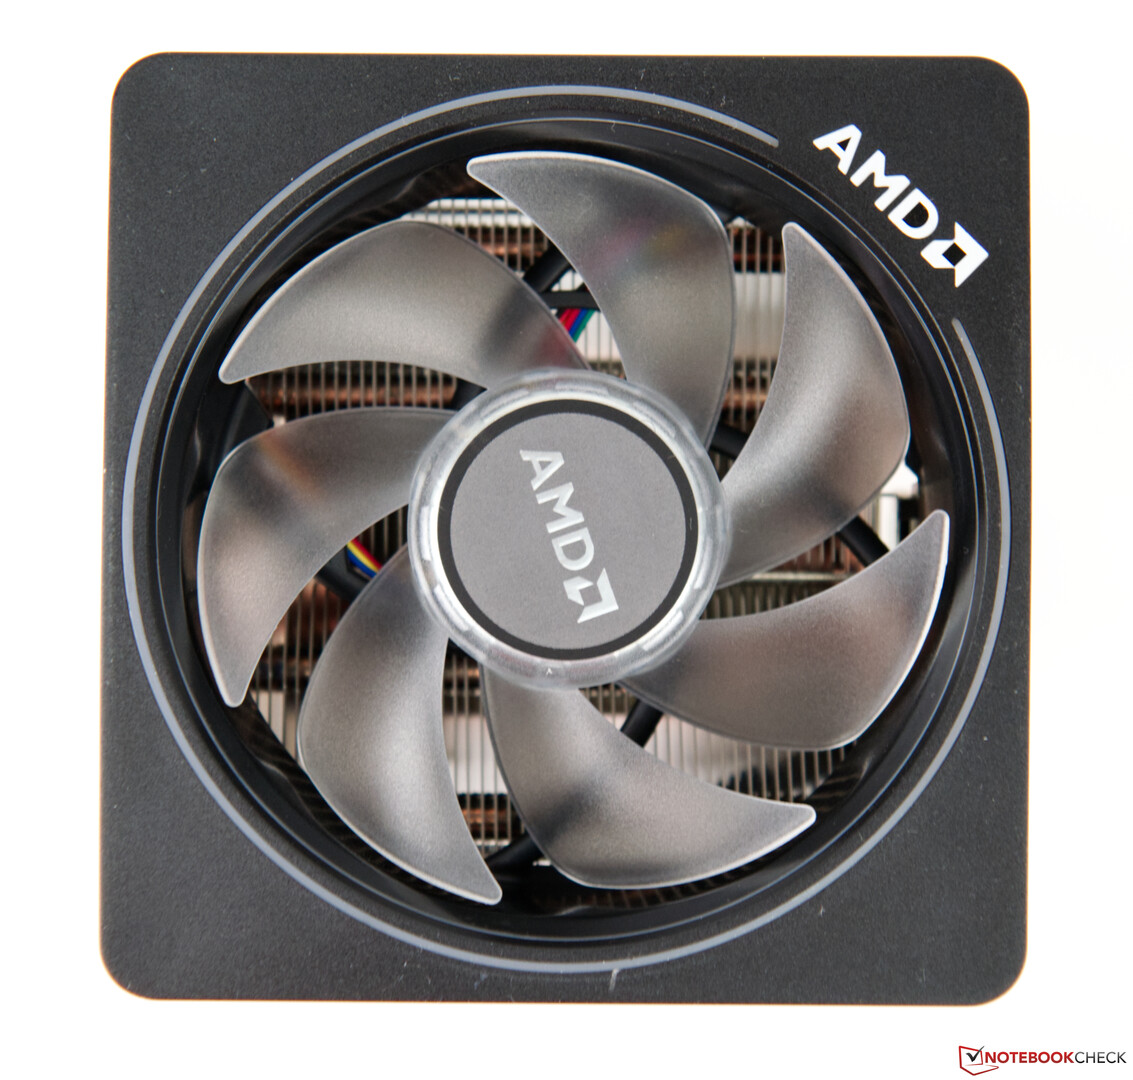 AMD Ryzen 7 3700X mit 8 Kernen und 16 Threads im Test - Notebookcheck